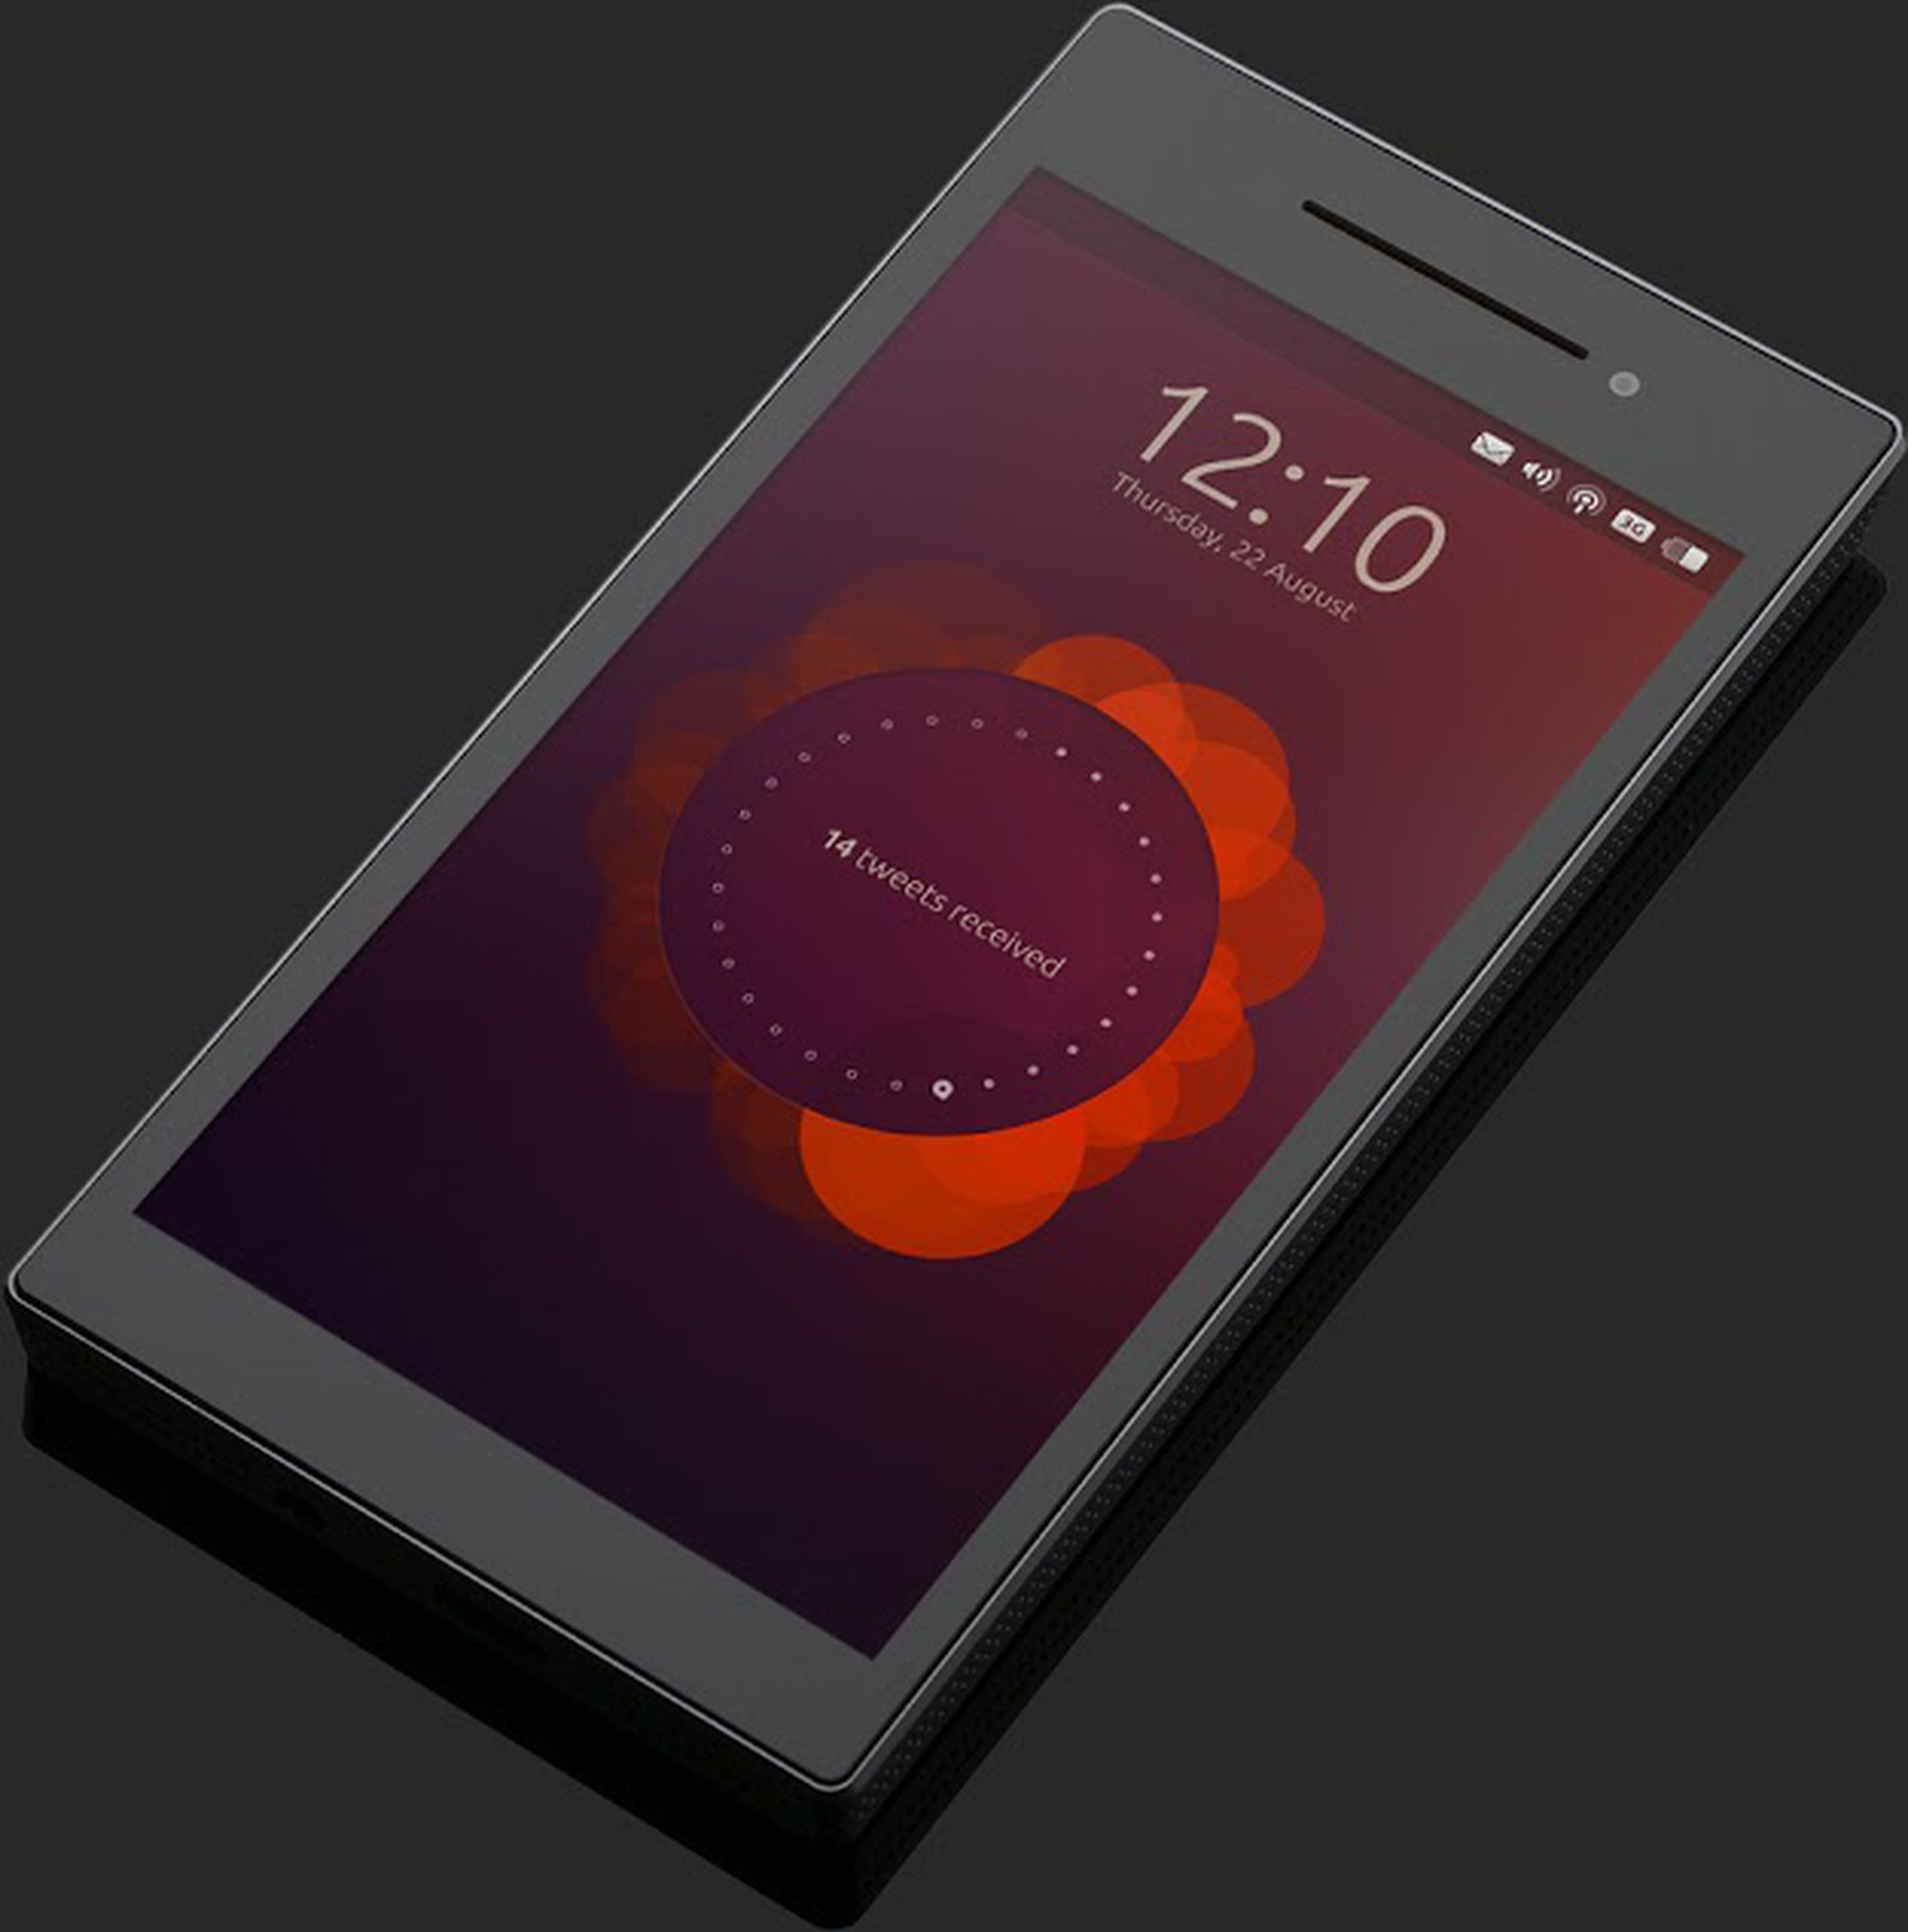 Ubuntu Edge smartphone gallery